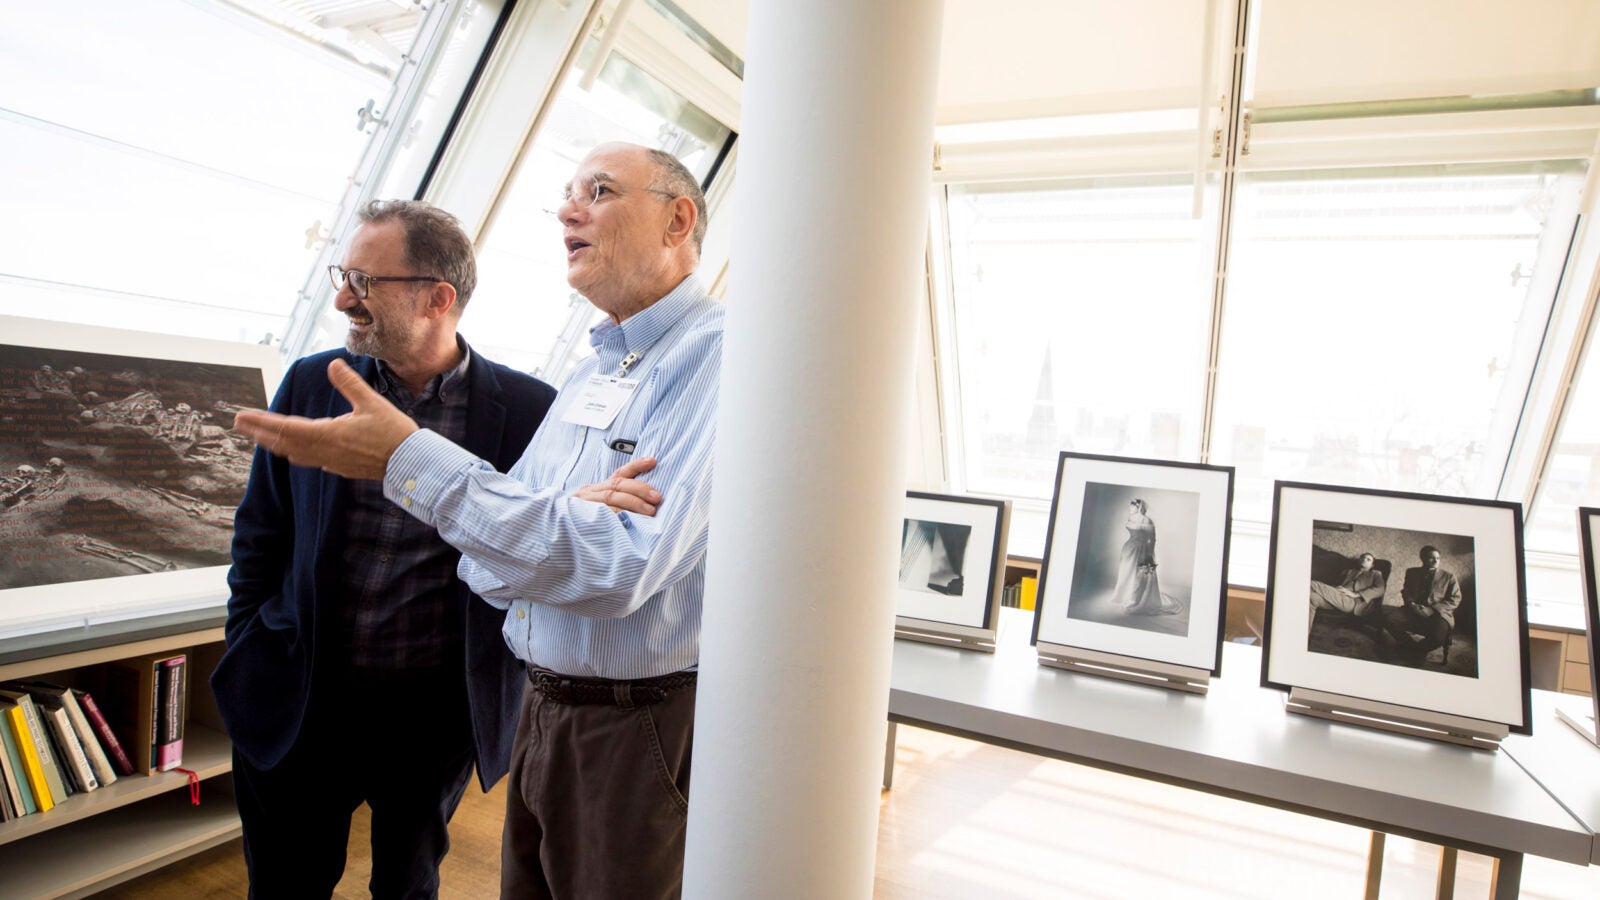 Gary Schneider and John Erdman at Harvard Art Museums exhibit.